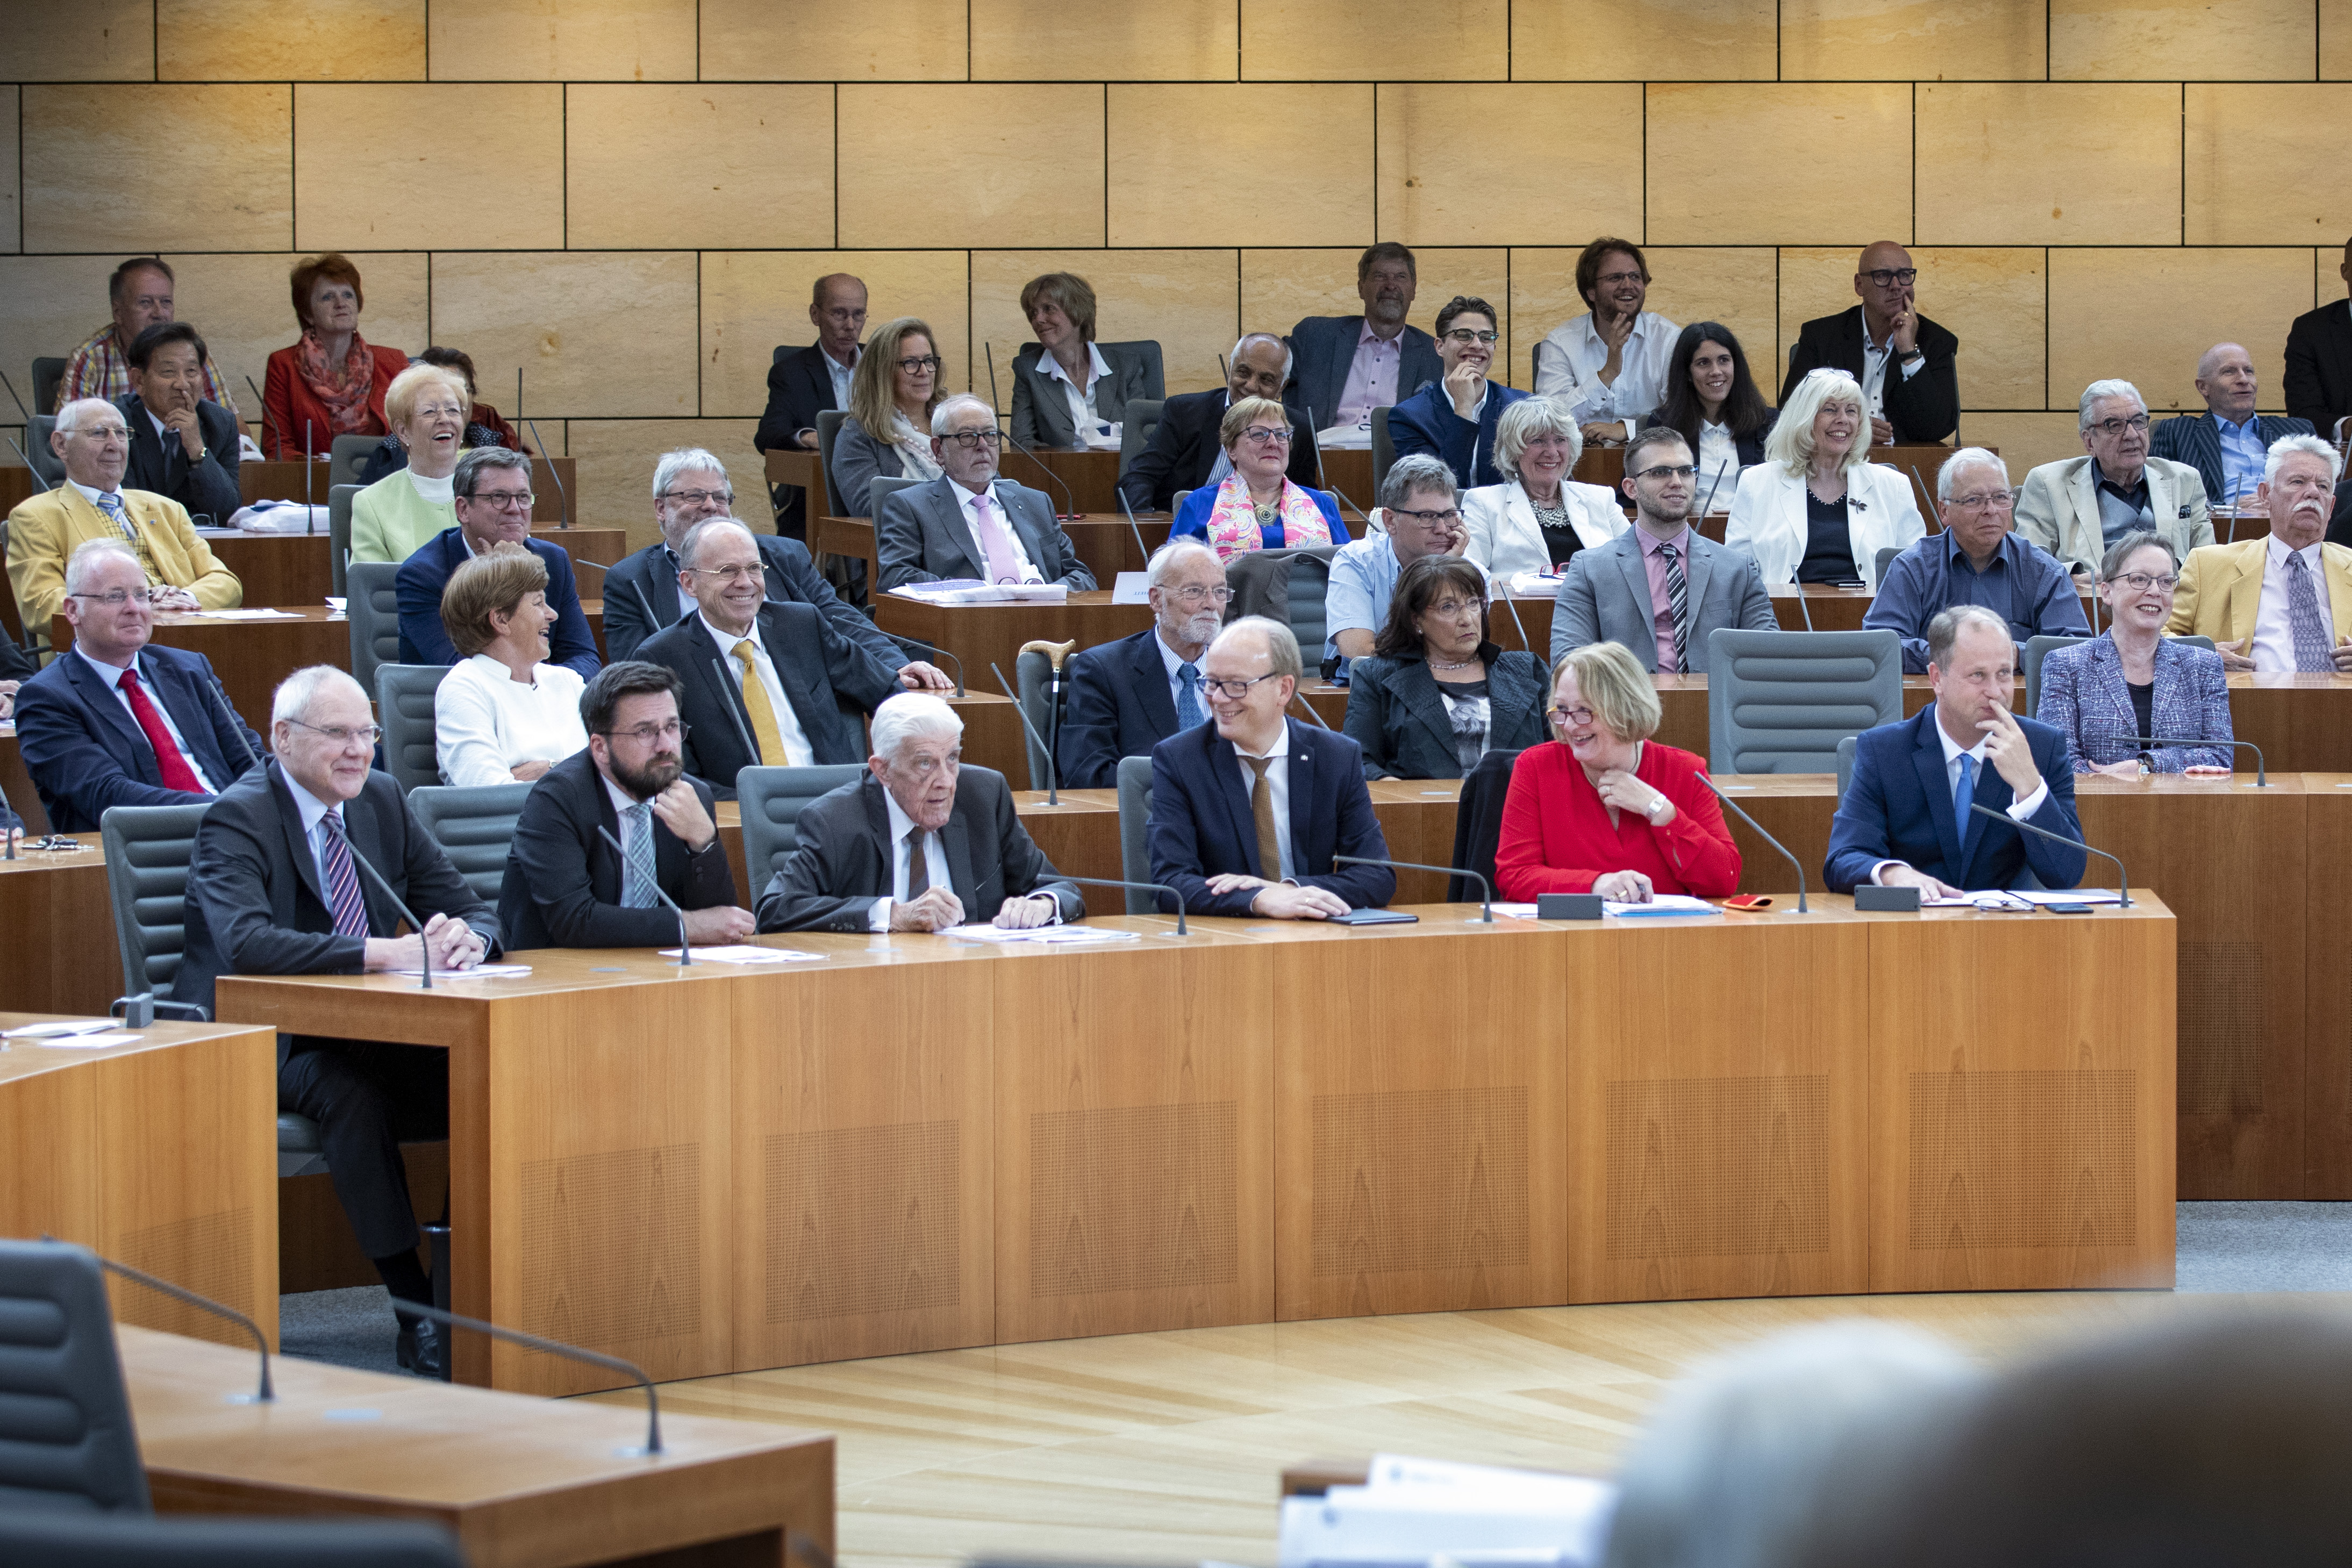 Festakt zum Walter Scheels 100. Geburtstag im Landtag Nordrhein-Westfalen